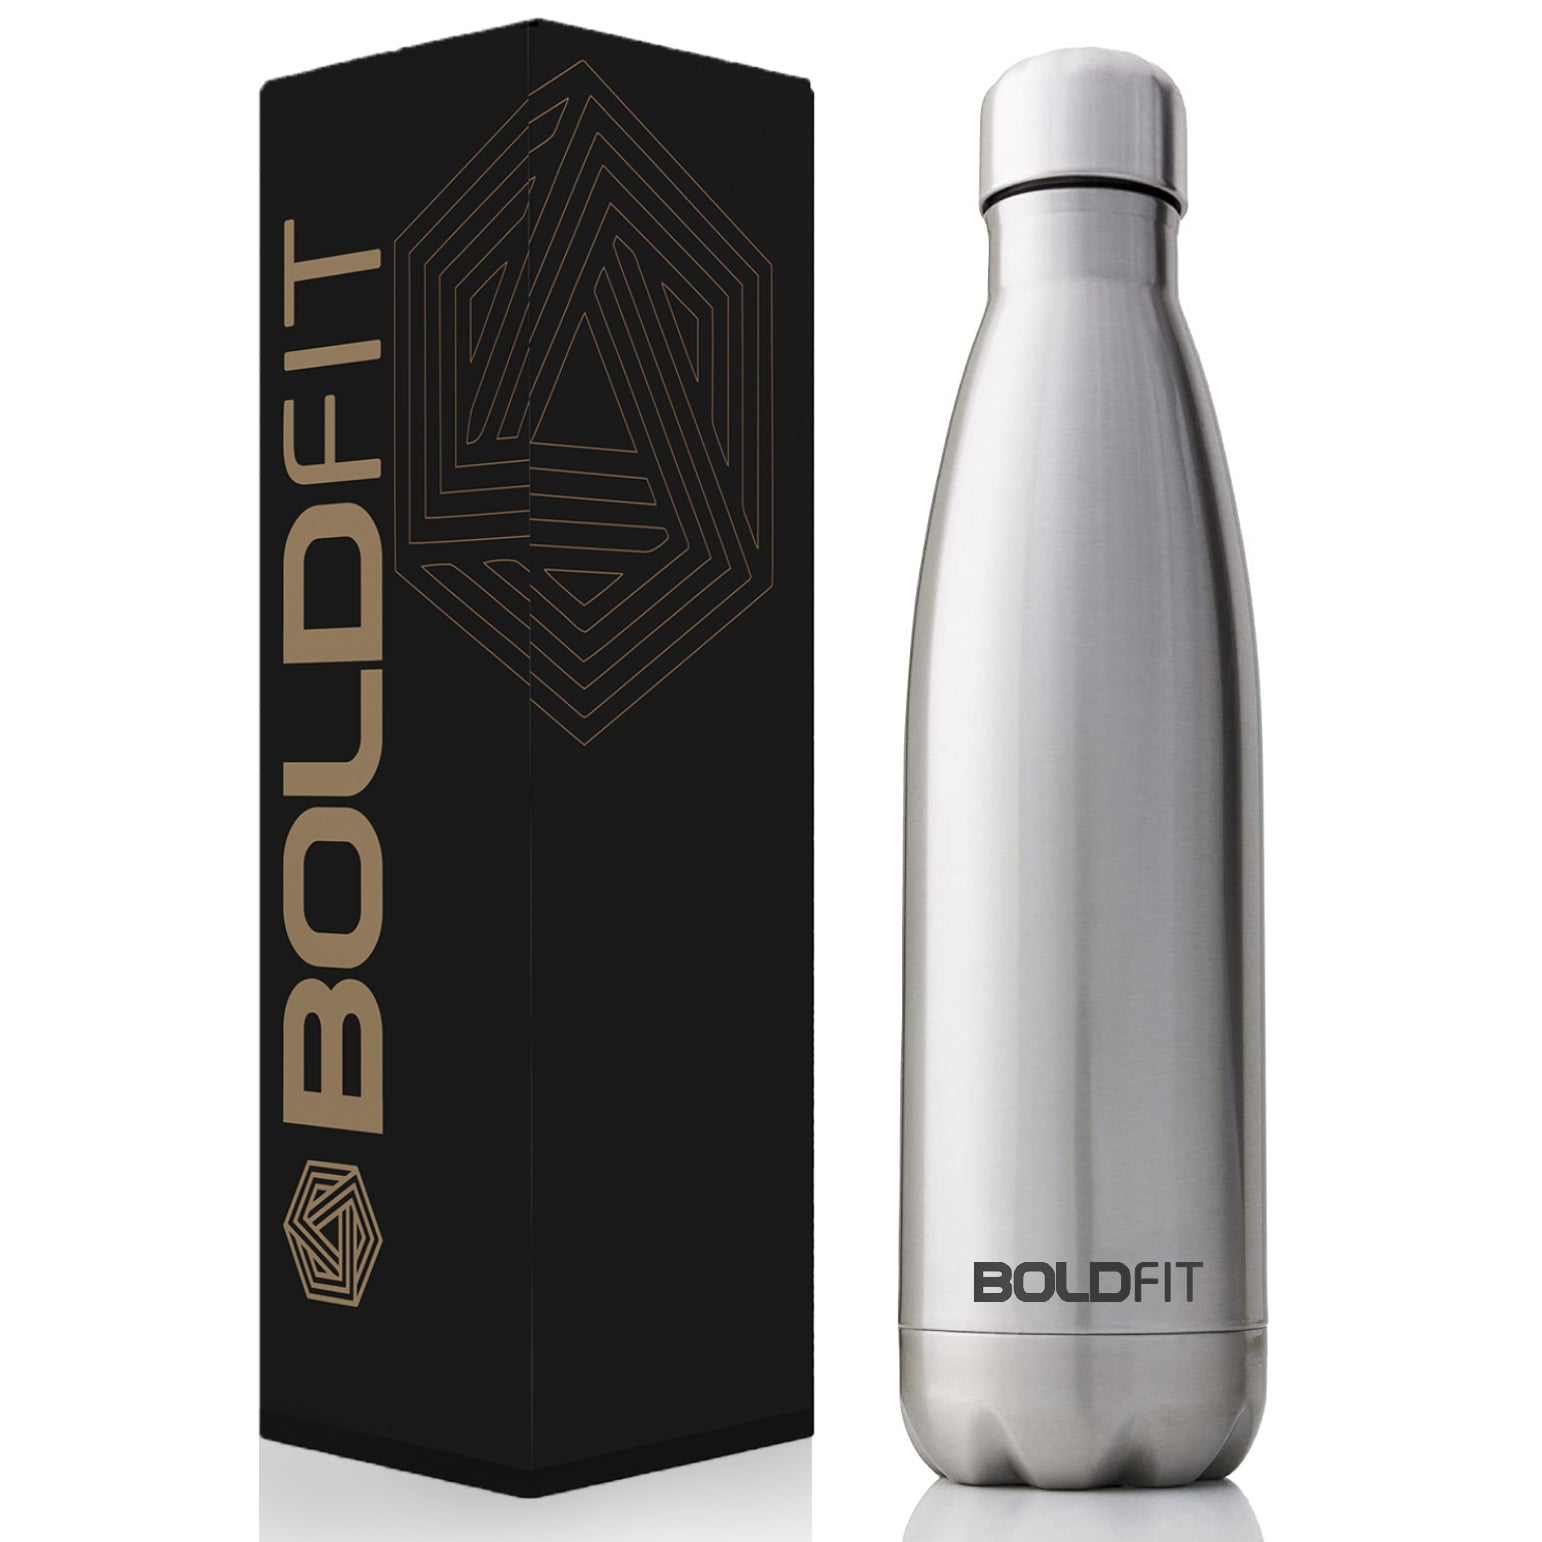 https://boldfit.in/cdn/shop/products/Boldfit_steel_sliver_bottle_2000x.jpg?v=1655203776